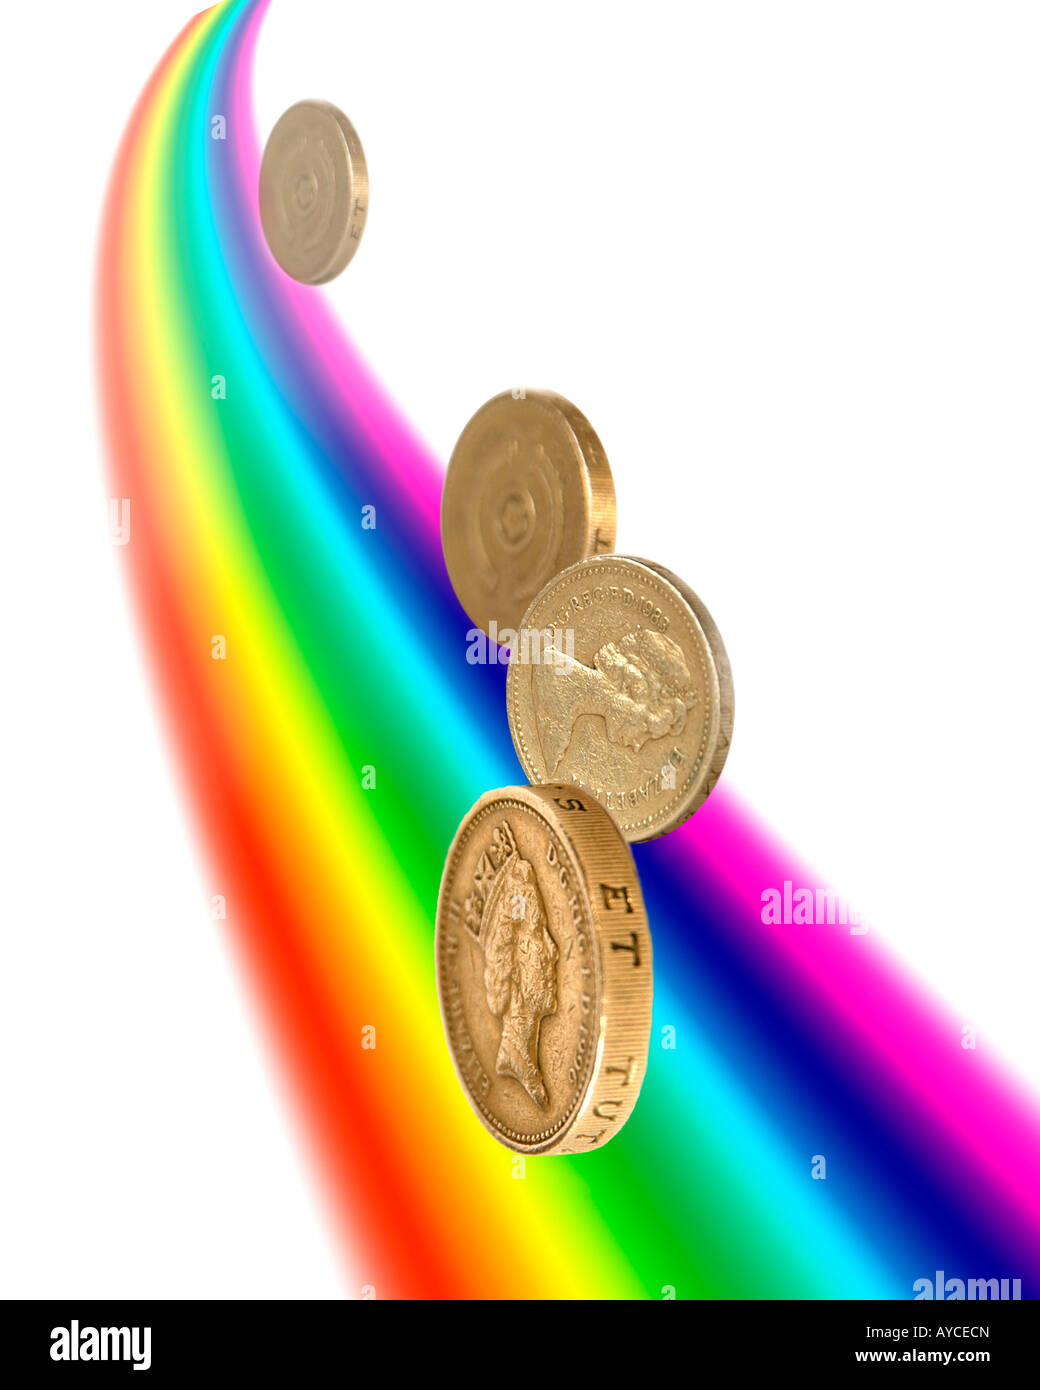 Los colores del arco iris y libras de oro bajando a sugerir la olla de oro al final del arco iris Foto de stock